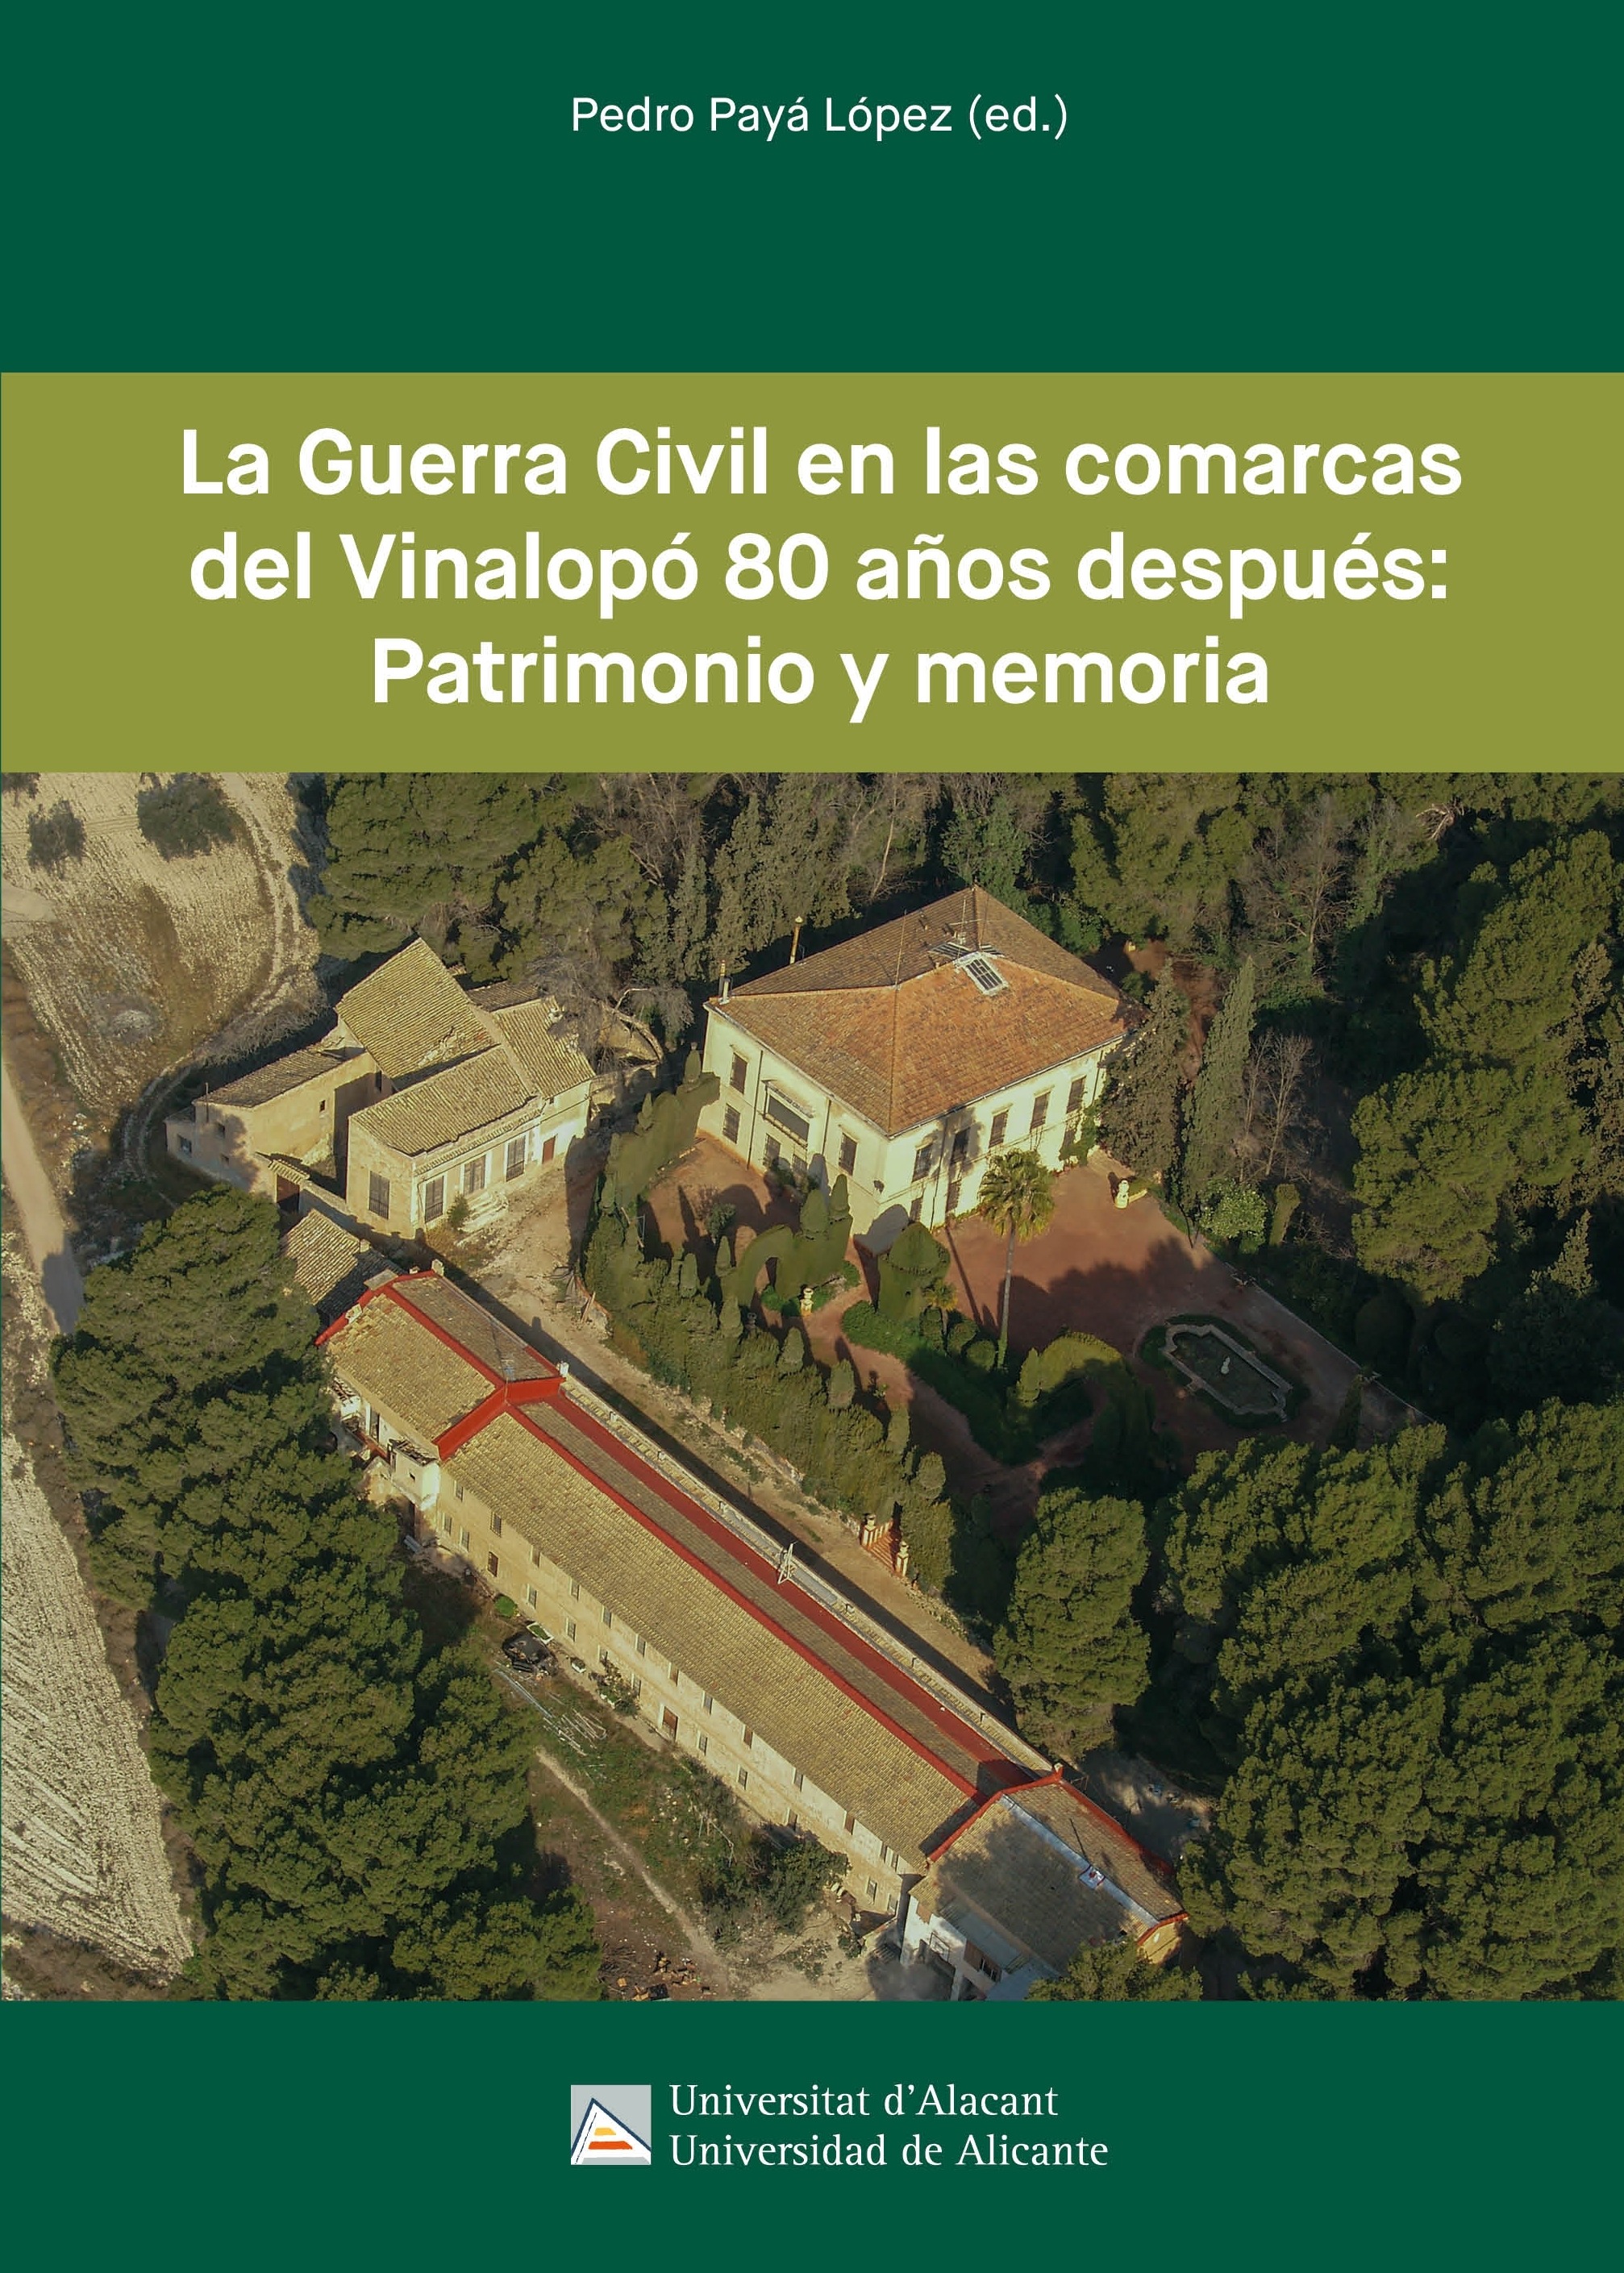 La Guerra Civil en las comarcas del VinalopÃ³ 80 aÃ±os despuÃ©s: Patrimonio y memoria